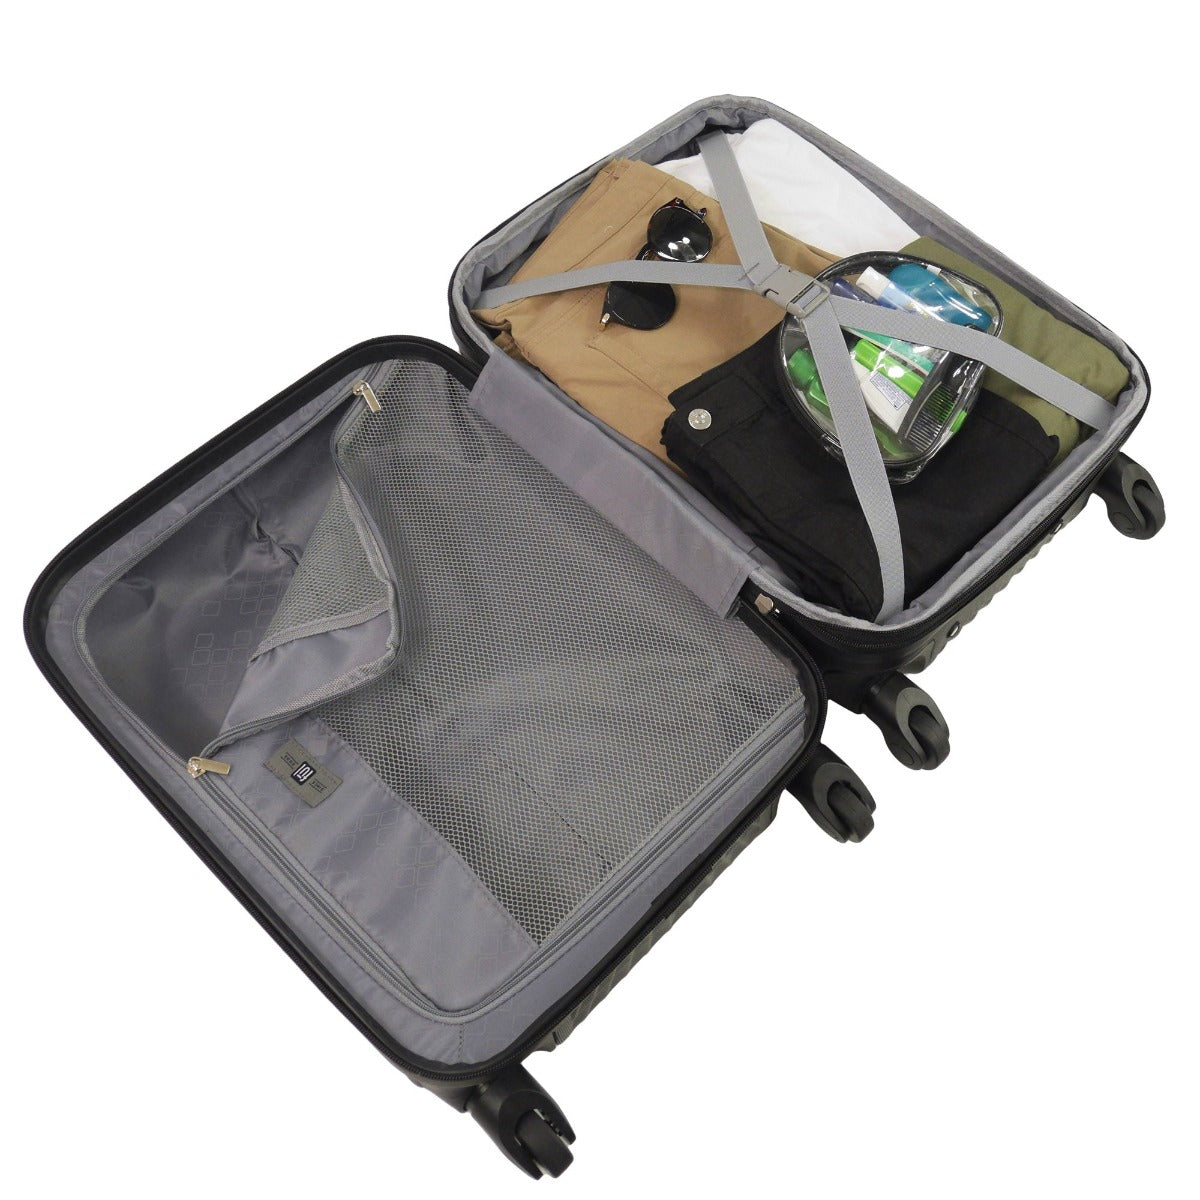 Ful Geo hard sided spinner suitcase hard sided luggage set black